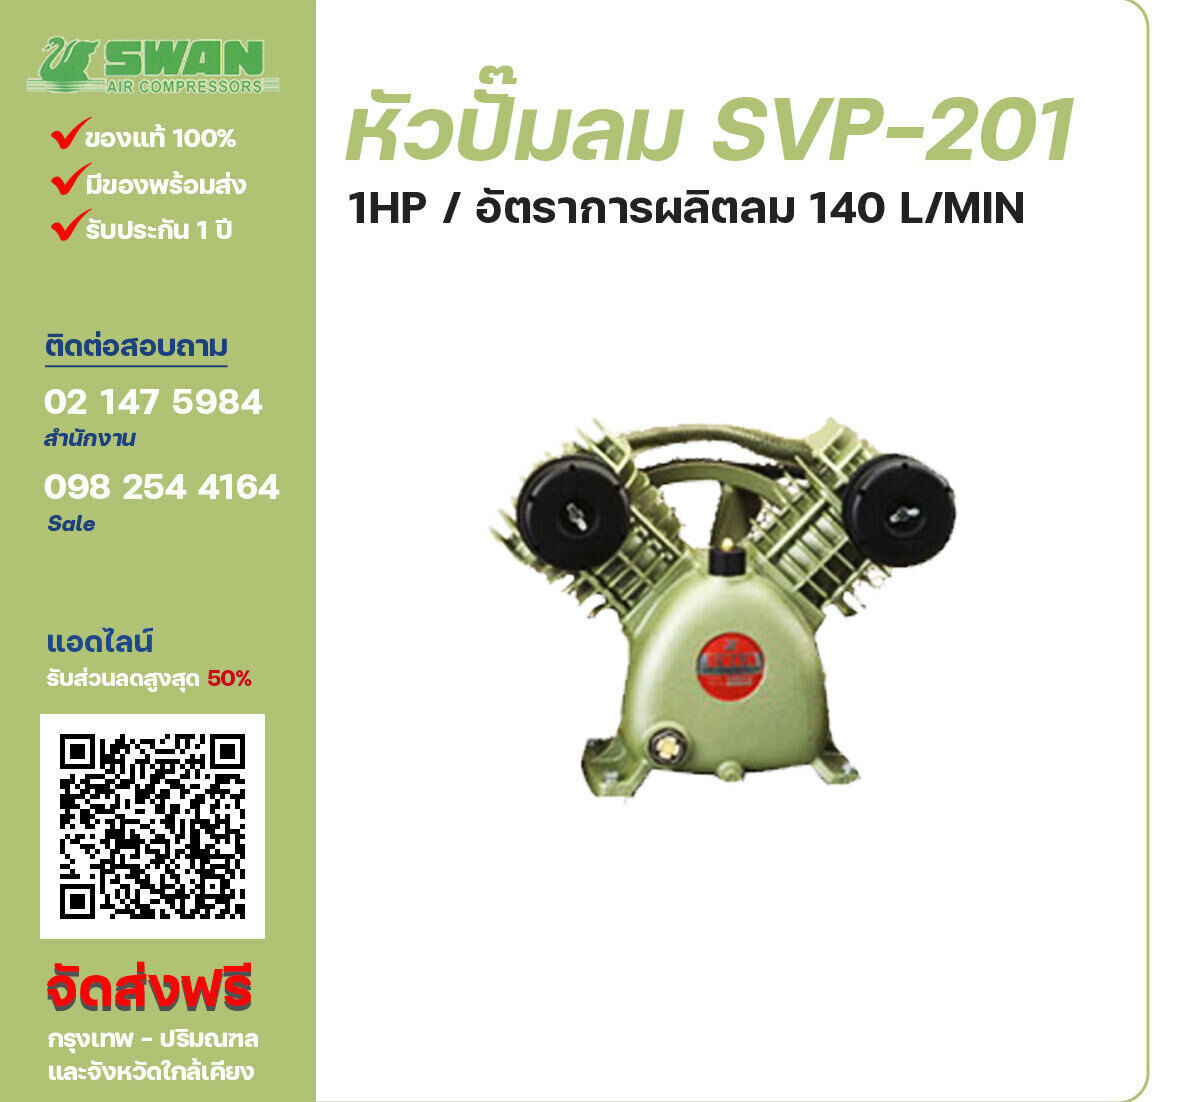 จำหน่ายหัวปั๊มลมสวอน ของแท้ 100% SWAN Bare Compressor รุ่น  SVP-201 ขนาด 1 แรงม้า อัตราการผลิตลม 186 ลิตร / นาที รับประกัน 3 เดือน ตามเงื่อนไขของบริษัทฯ
จัดส่งฟรี กรุงเทพ-ปริมณฑล